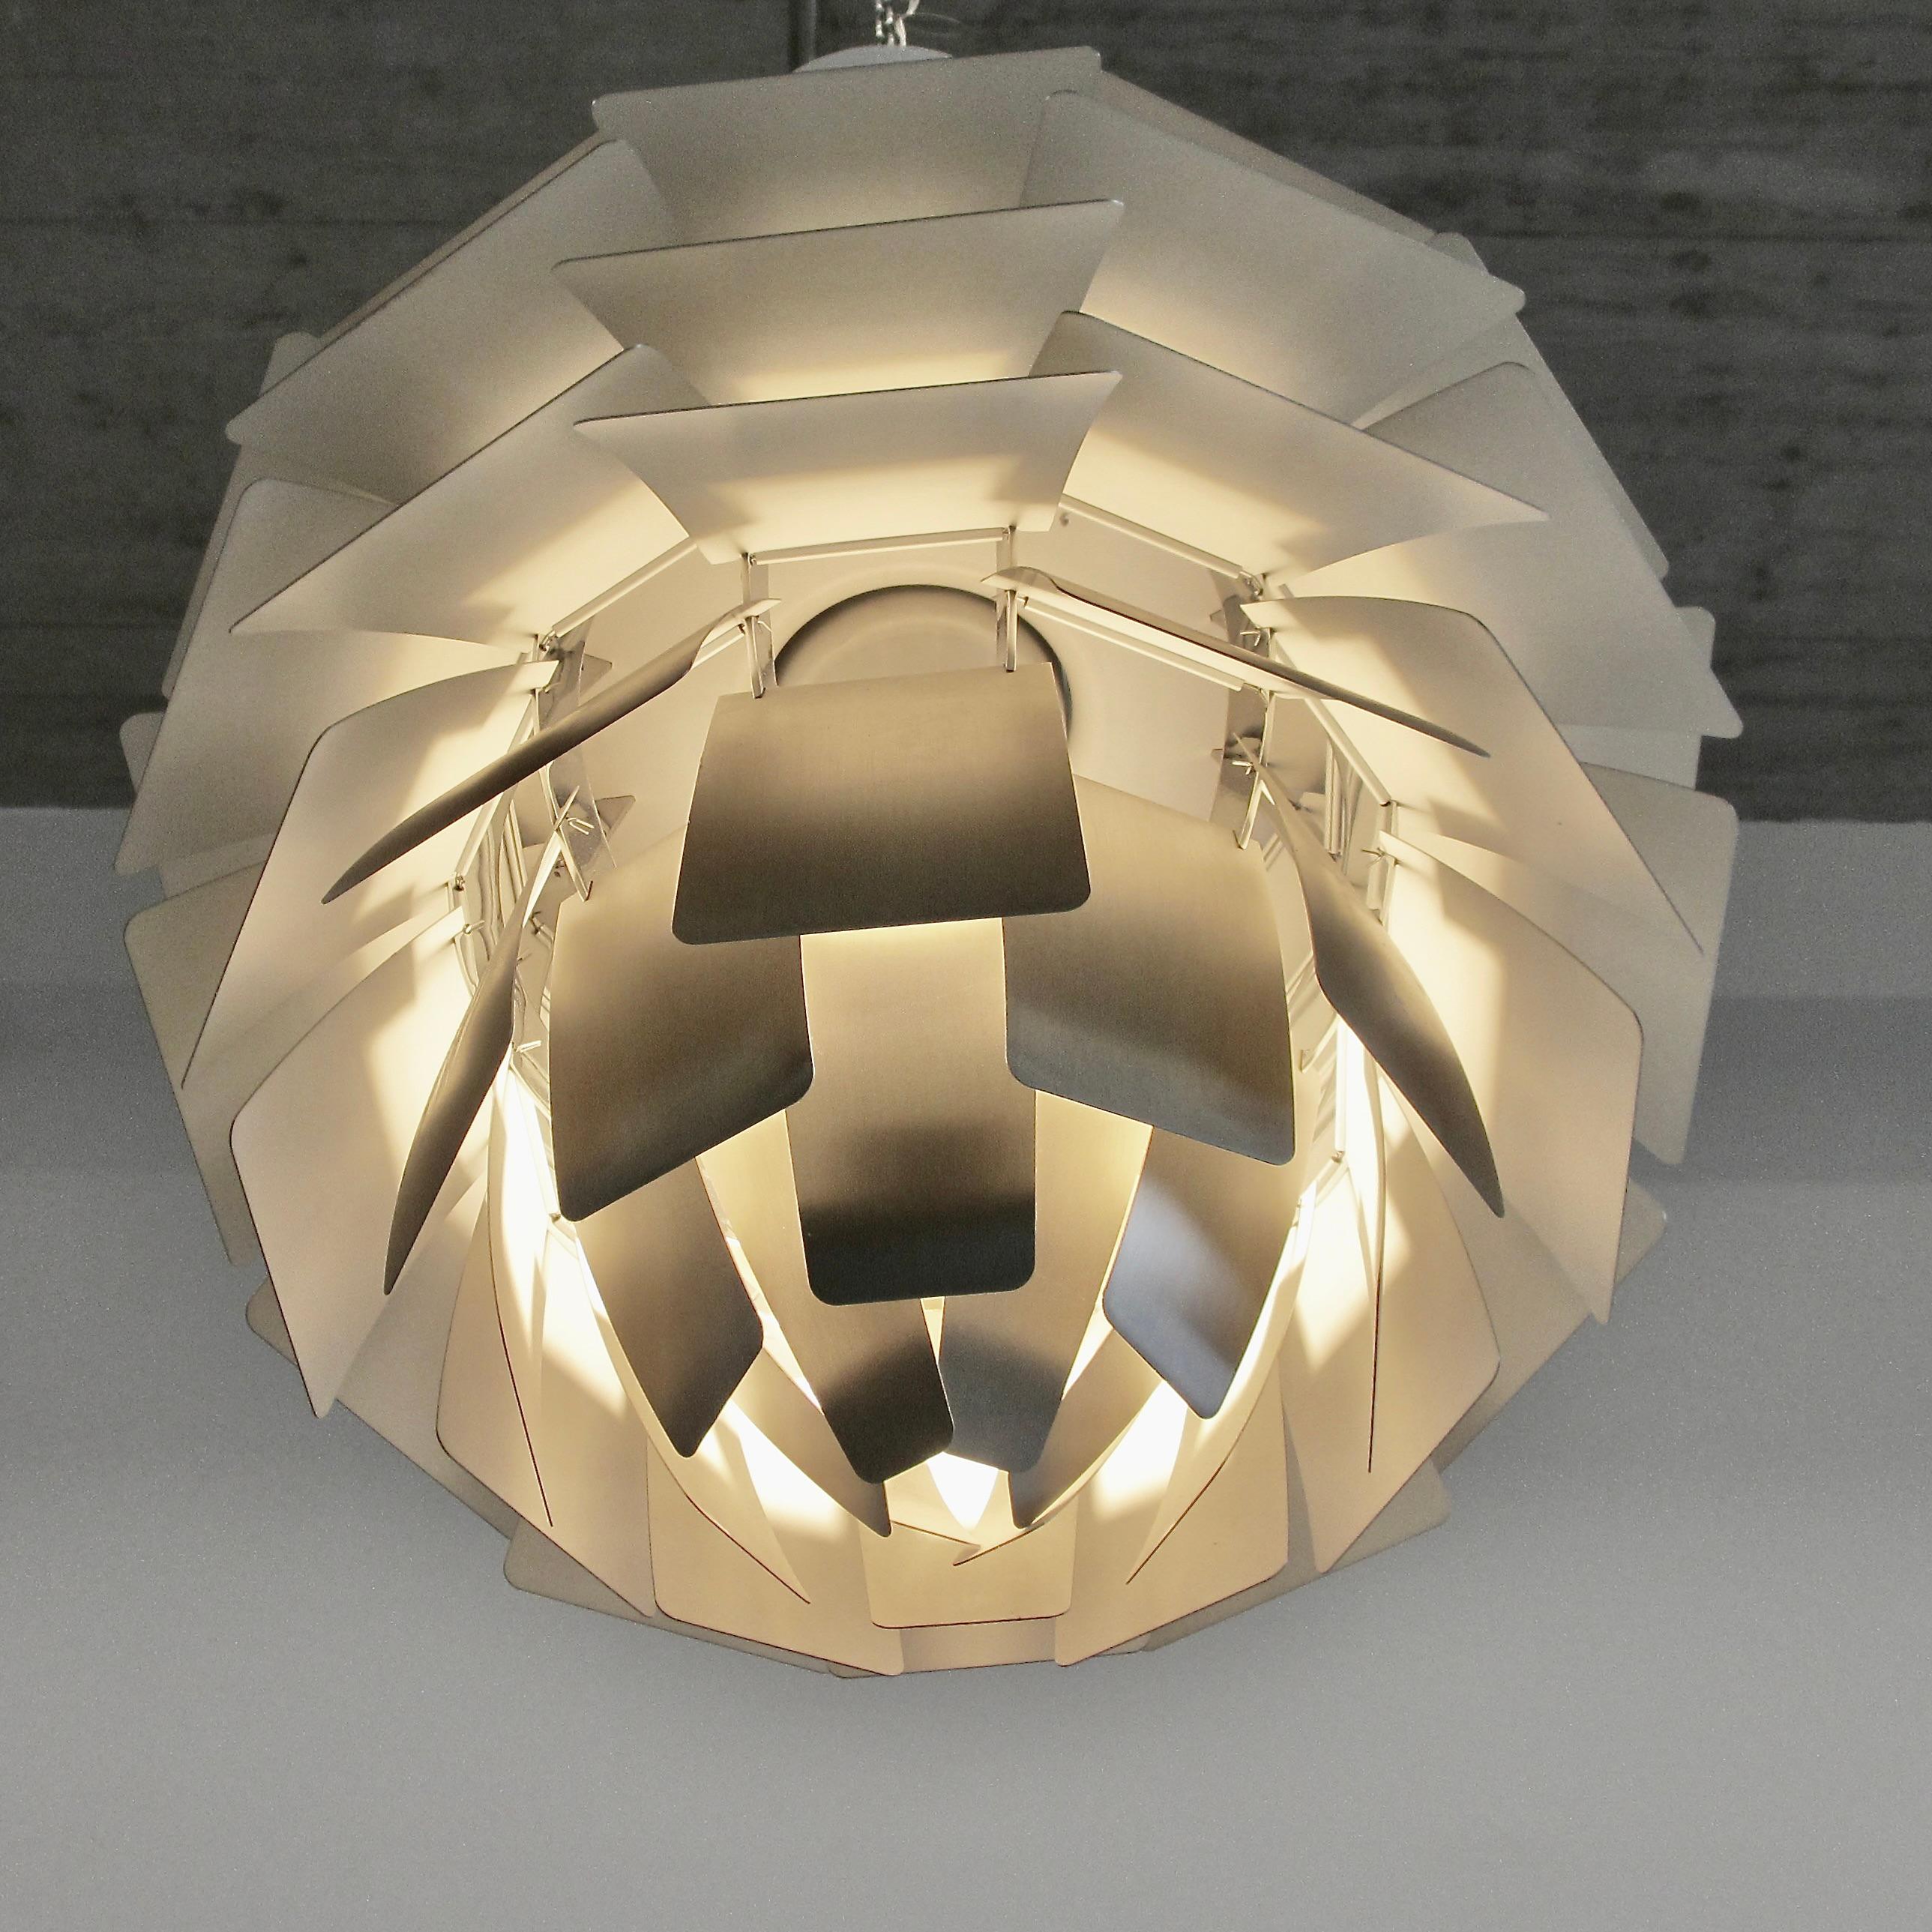 Mid-Century Modern Pendant Lamp Designed by Poul Henningsen. Denmark, Louis Poulsen, 2012 For Sale